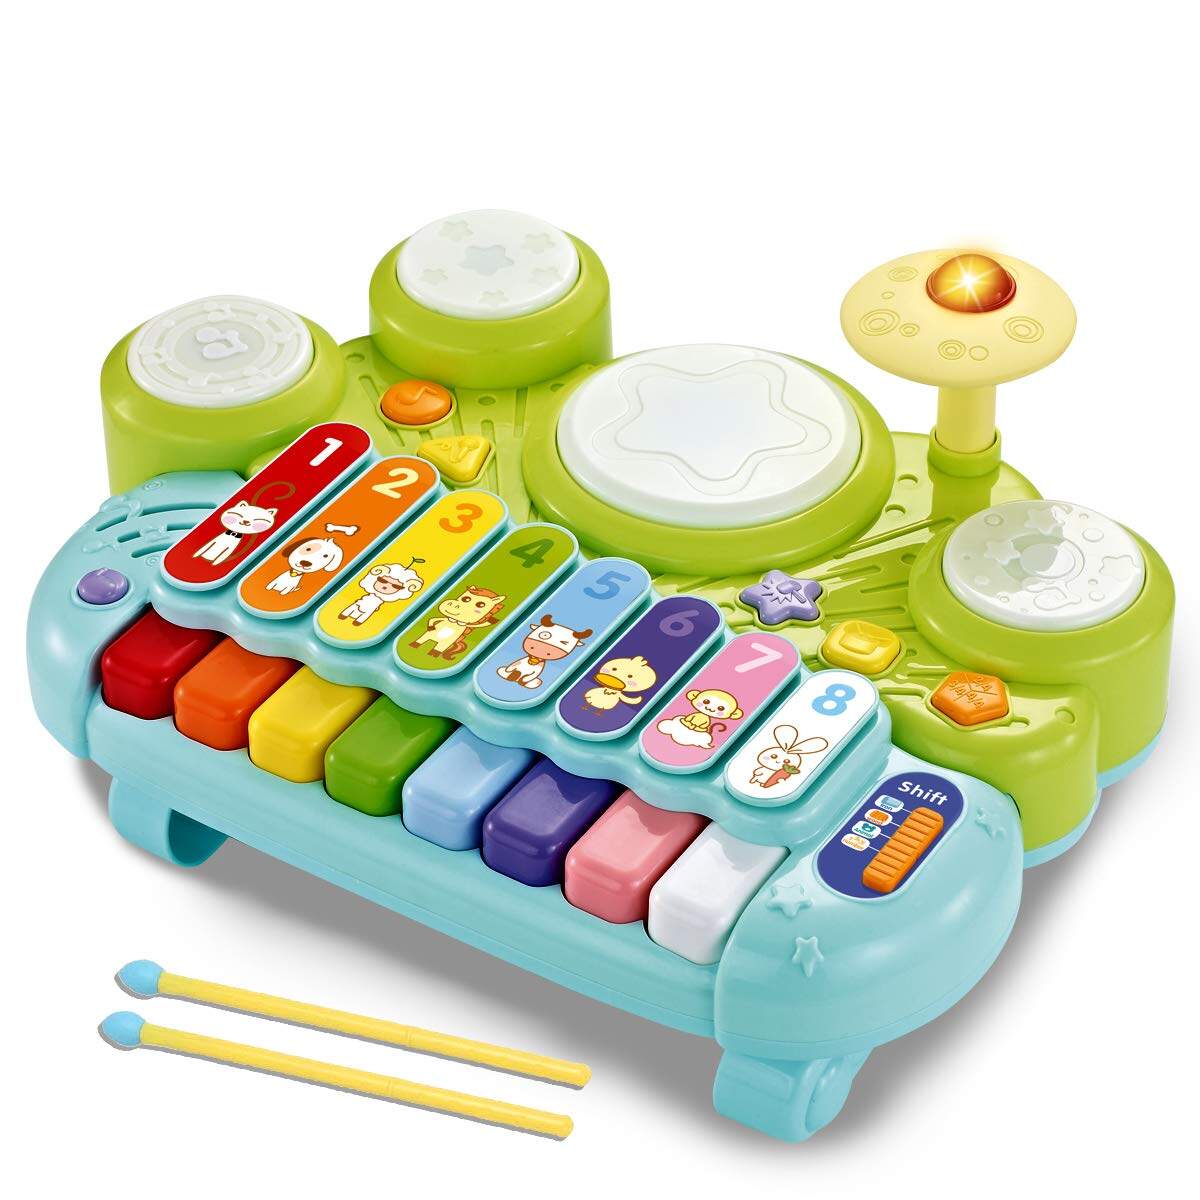 Đồ chơi trẻ em 6 đến 12 tháng, 6 tháng tuổi Đàn Piano cho bé Đồ chơi đồ